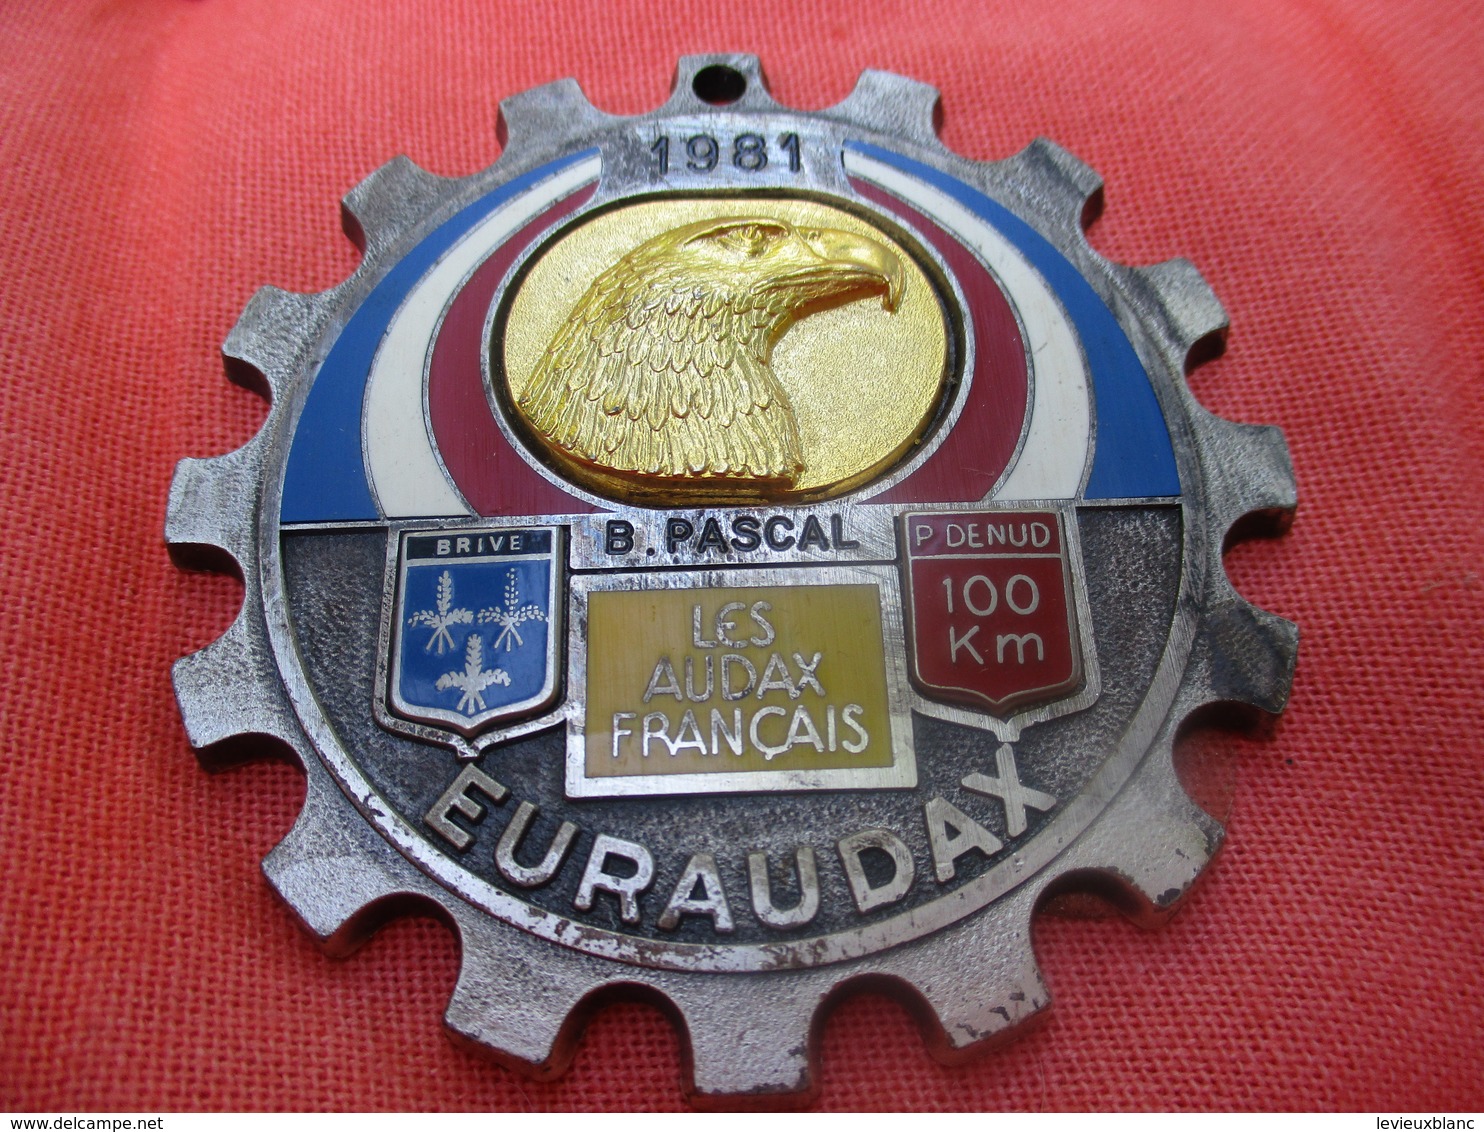 Médaille De Sport/Cyclisme/ EURAUDAX/100 KM P Denud/ Tête D'Aigle/ BRIVE/Les Audax Français/1981    SPO290 - Cycling